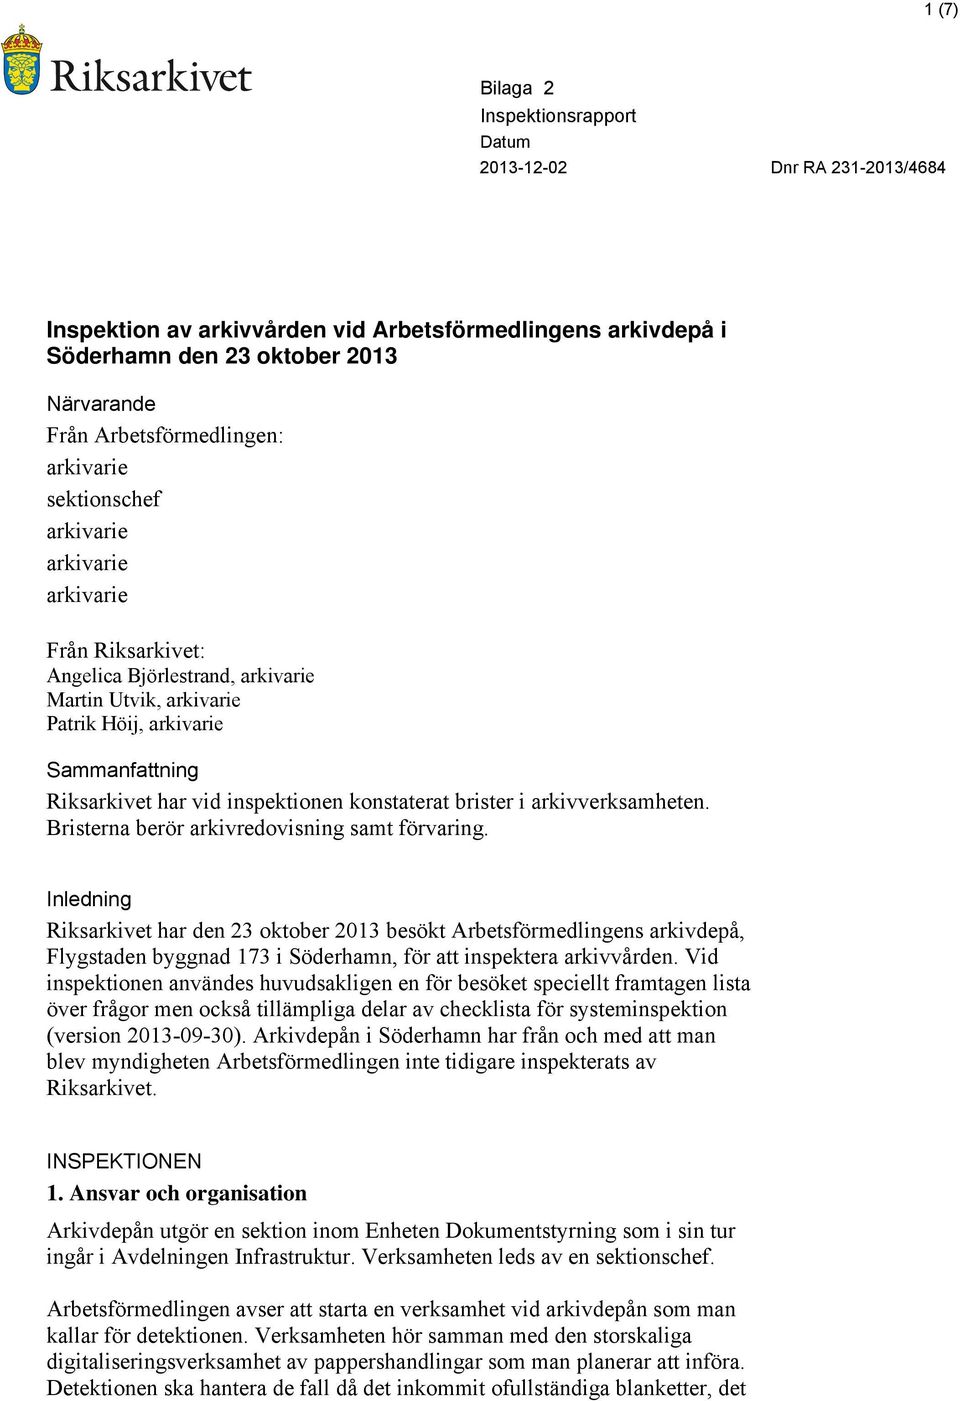 Bristerna berör arkivredovisning samt förvaring. Inledning Riksarkivet har den 23 oktober 2013 besökt Arbetsförmedlingens arkivdepå, Flygstaden byggnad 173 i Söderhamn, för att inspektera arkivvården.